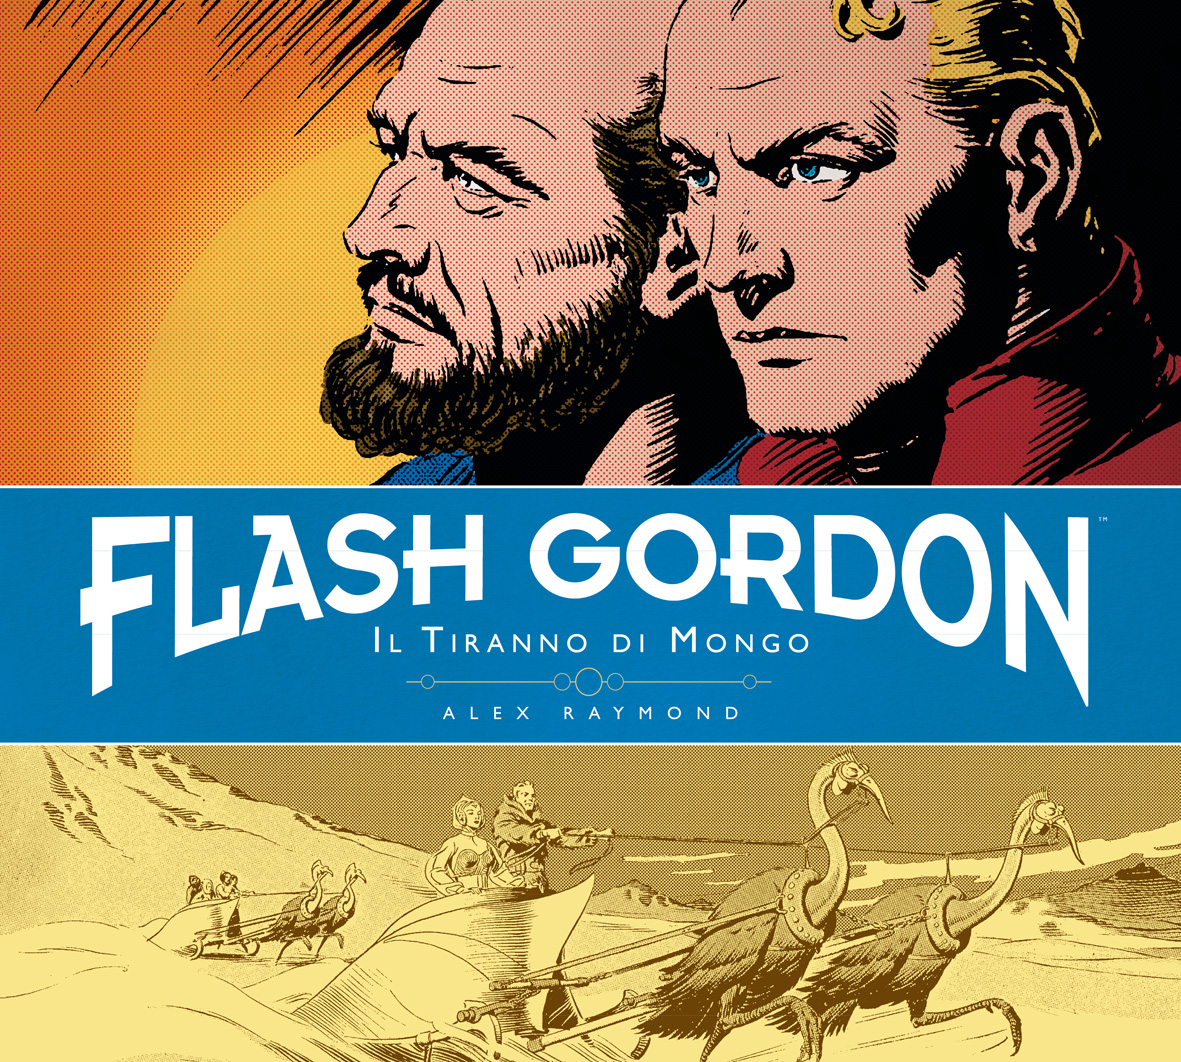 Libri Alex Raymond / Don Moore - Il Tiranno Di Mongo. Flash Gordon Vol 02 NUOVO SIGILLATO, EDIZIONE DEL 23/10/2014 SUBITO DISPONIBILE